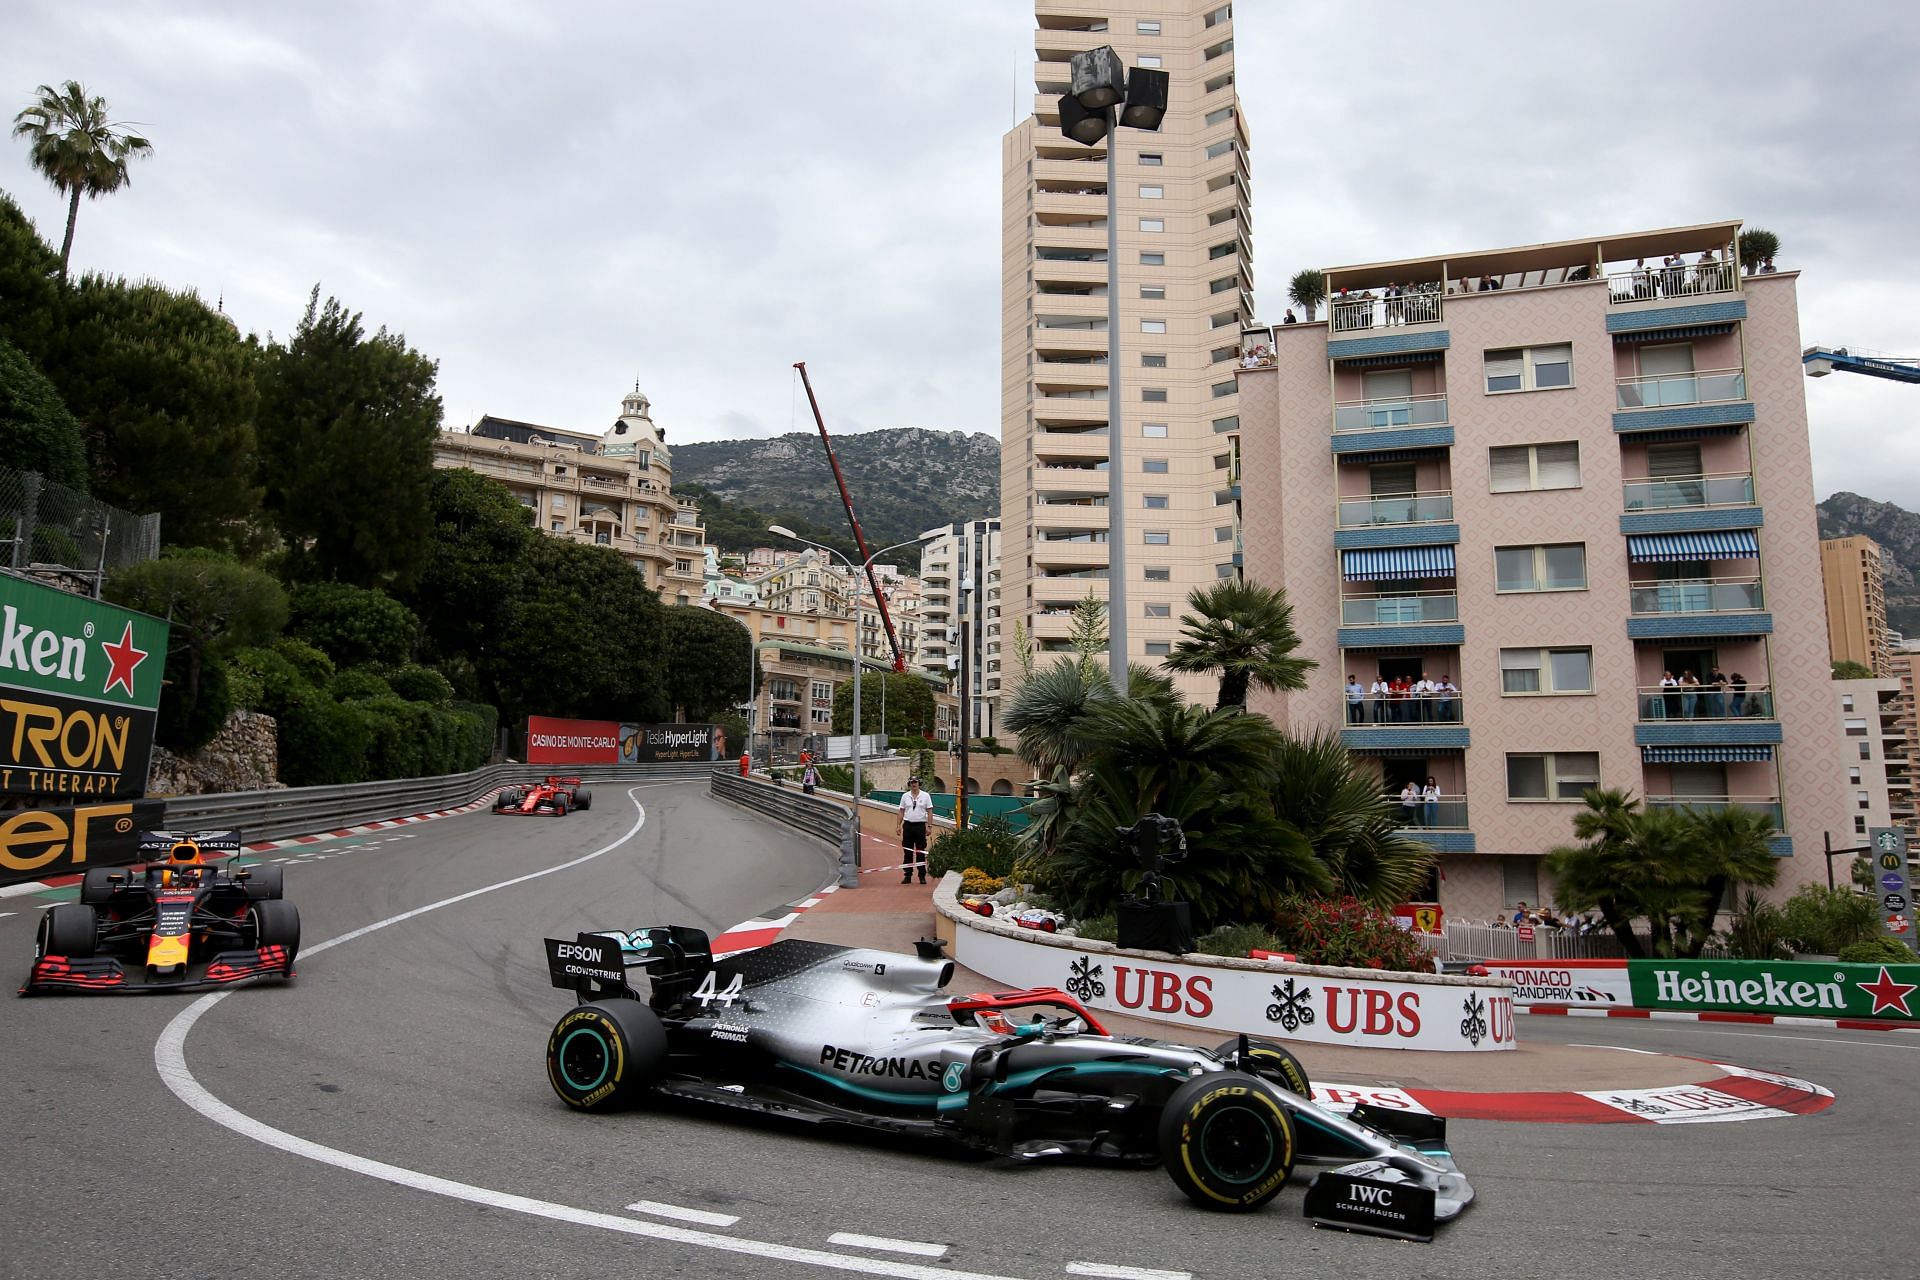 F1 Grand Prix of Monaco 2021 Mercedes